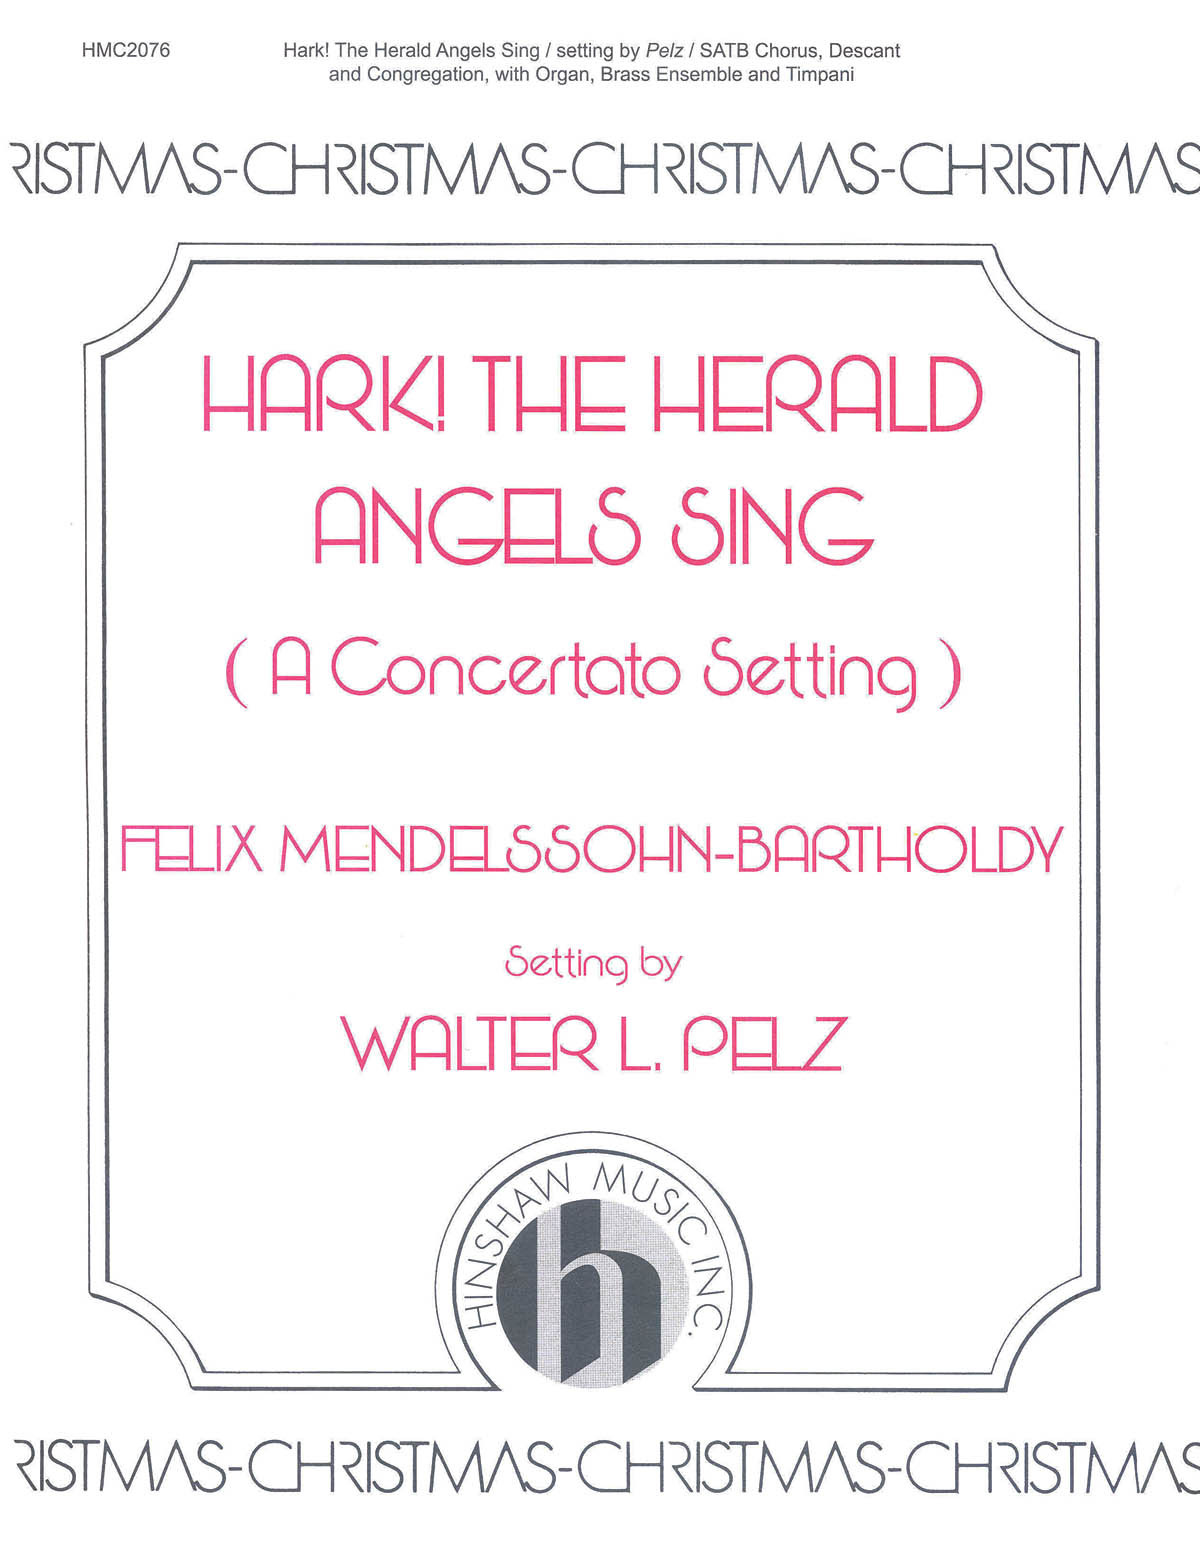 Hark, The Herald Angels Sing Concertato